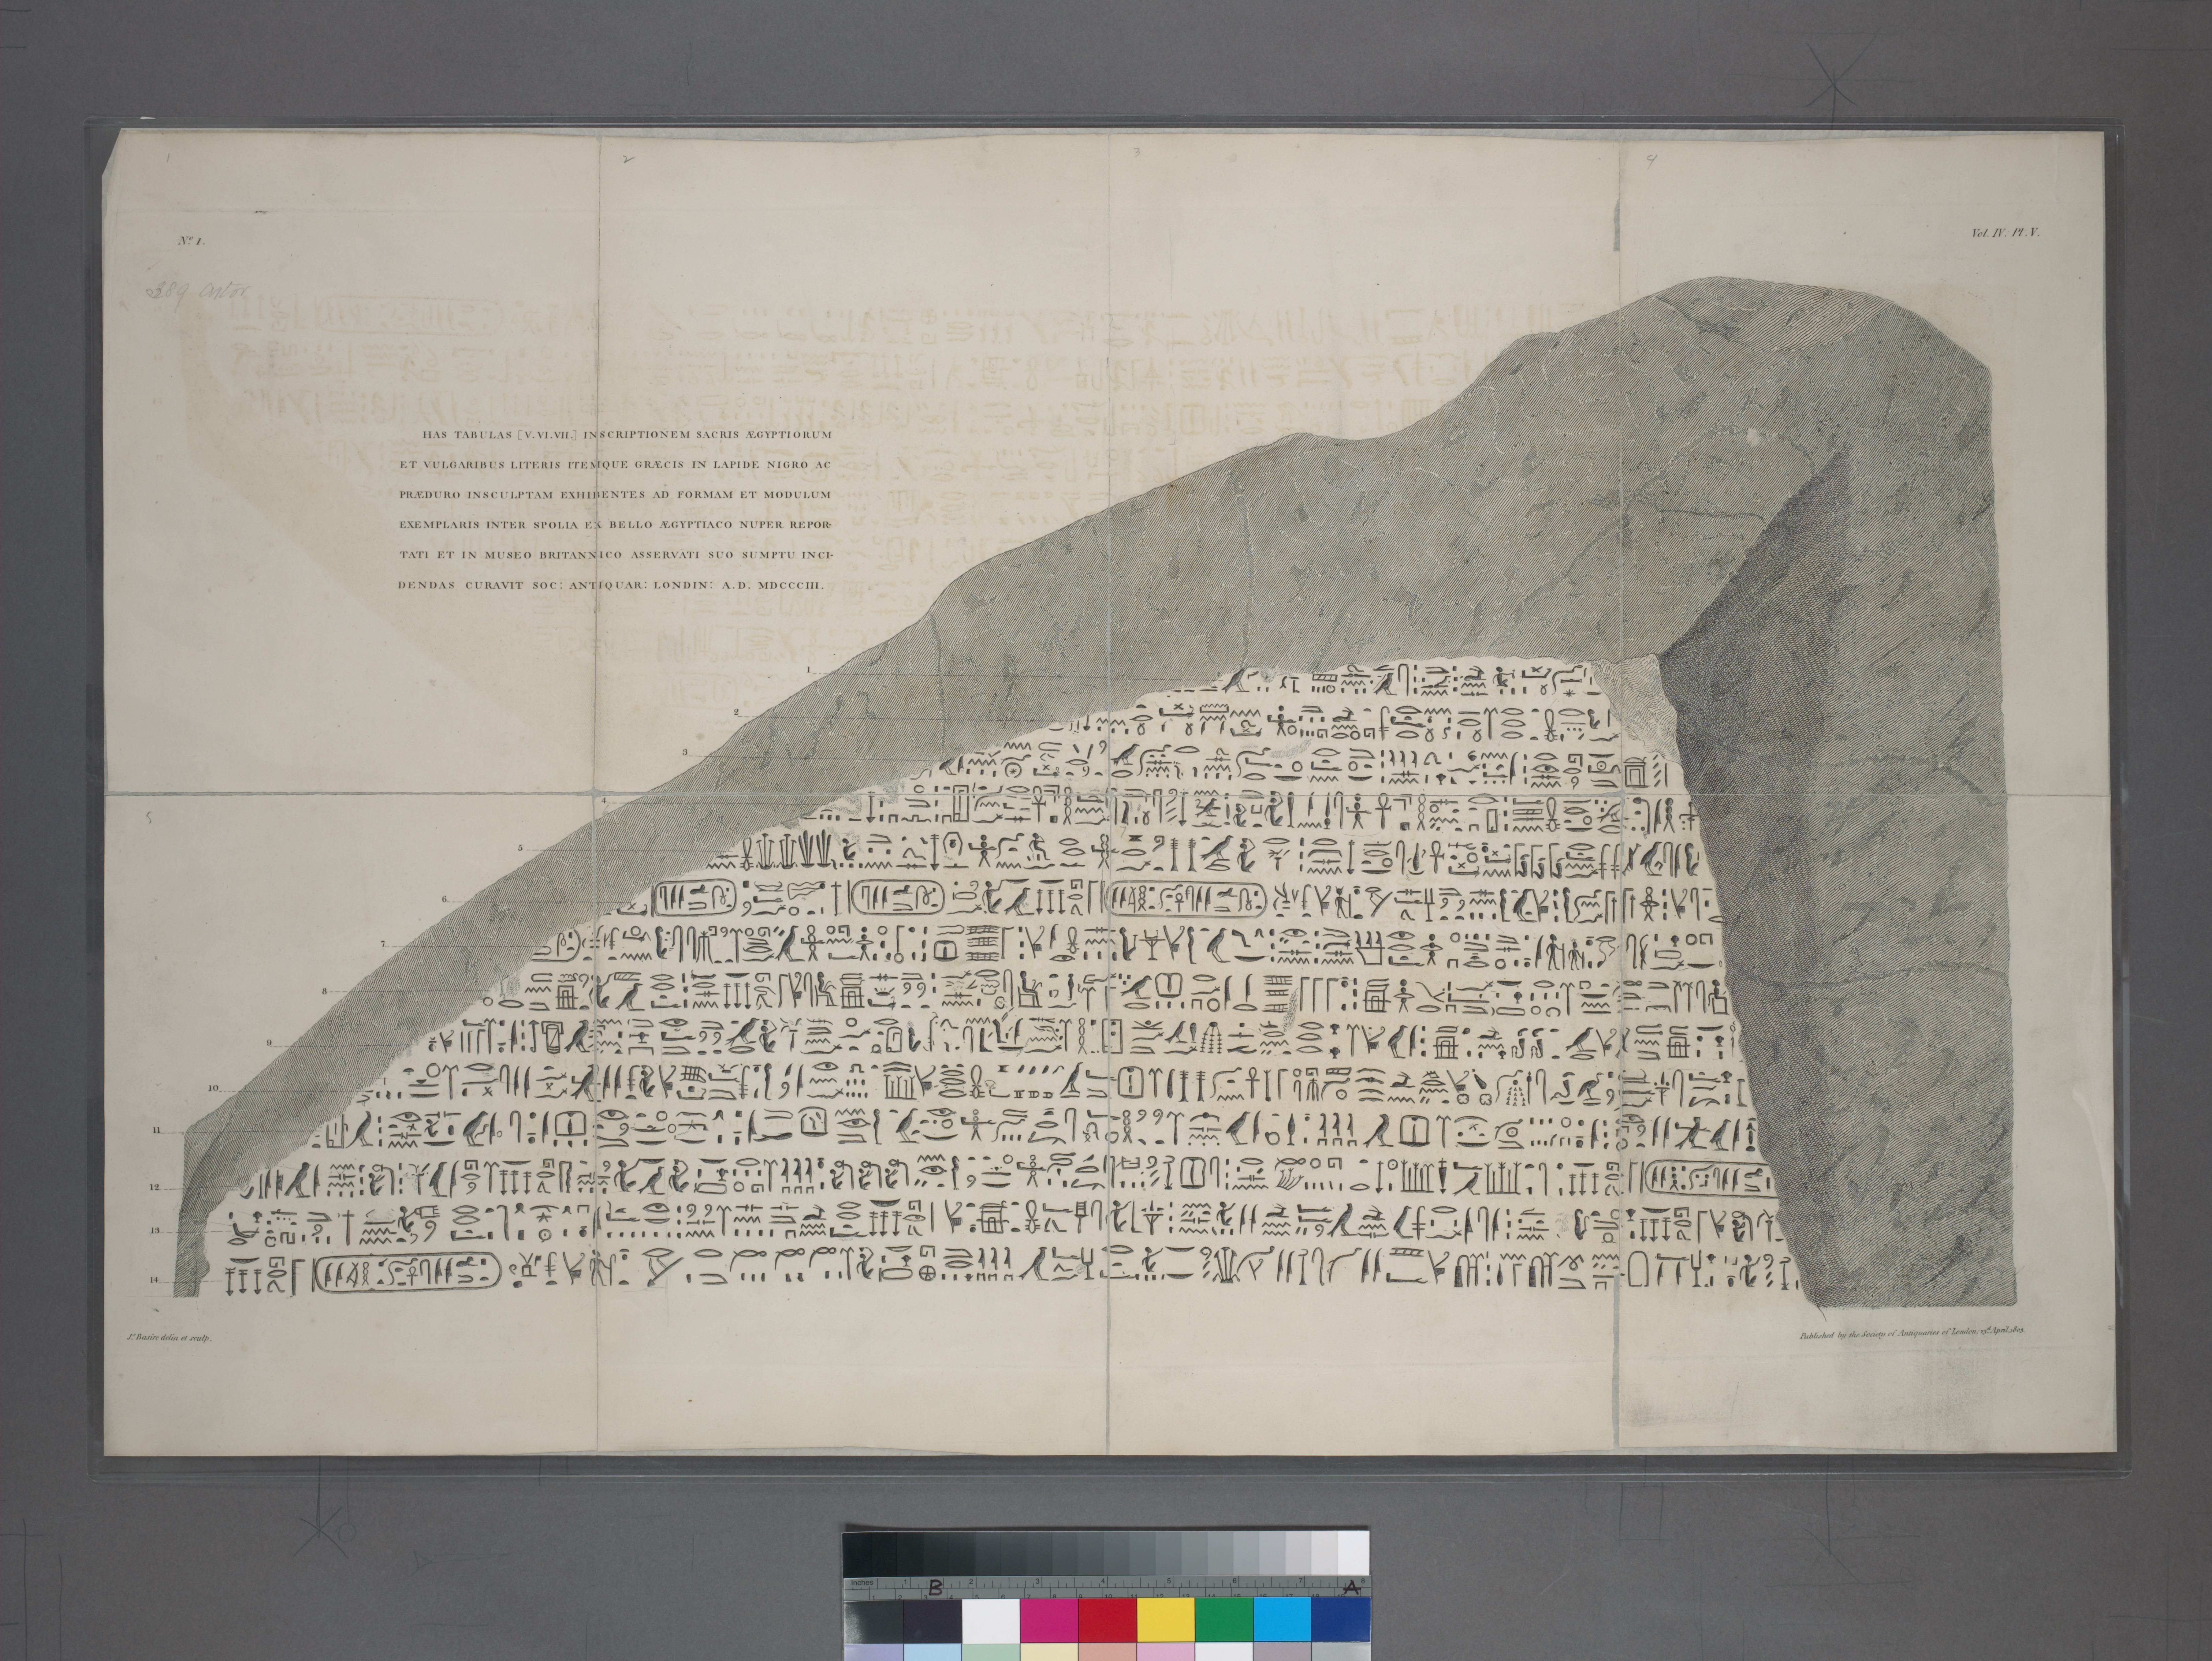 Rosetta Stone - Egyptian hieroglyphs - Egyptian language